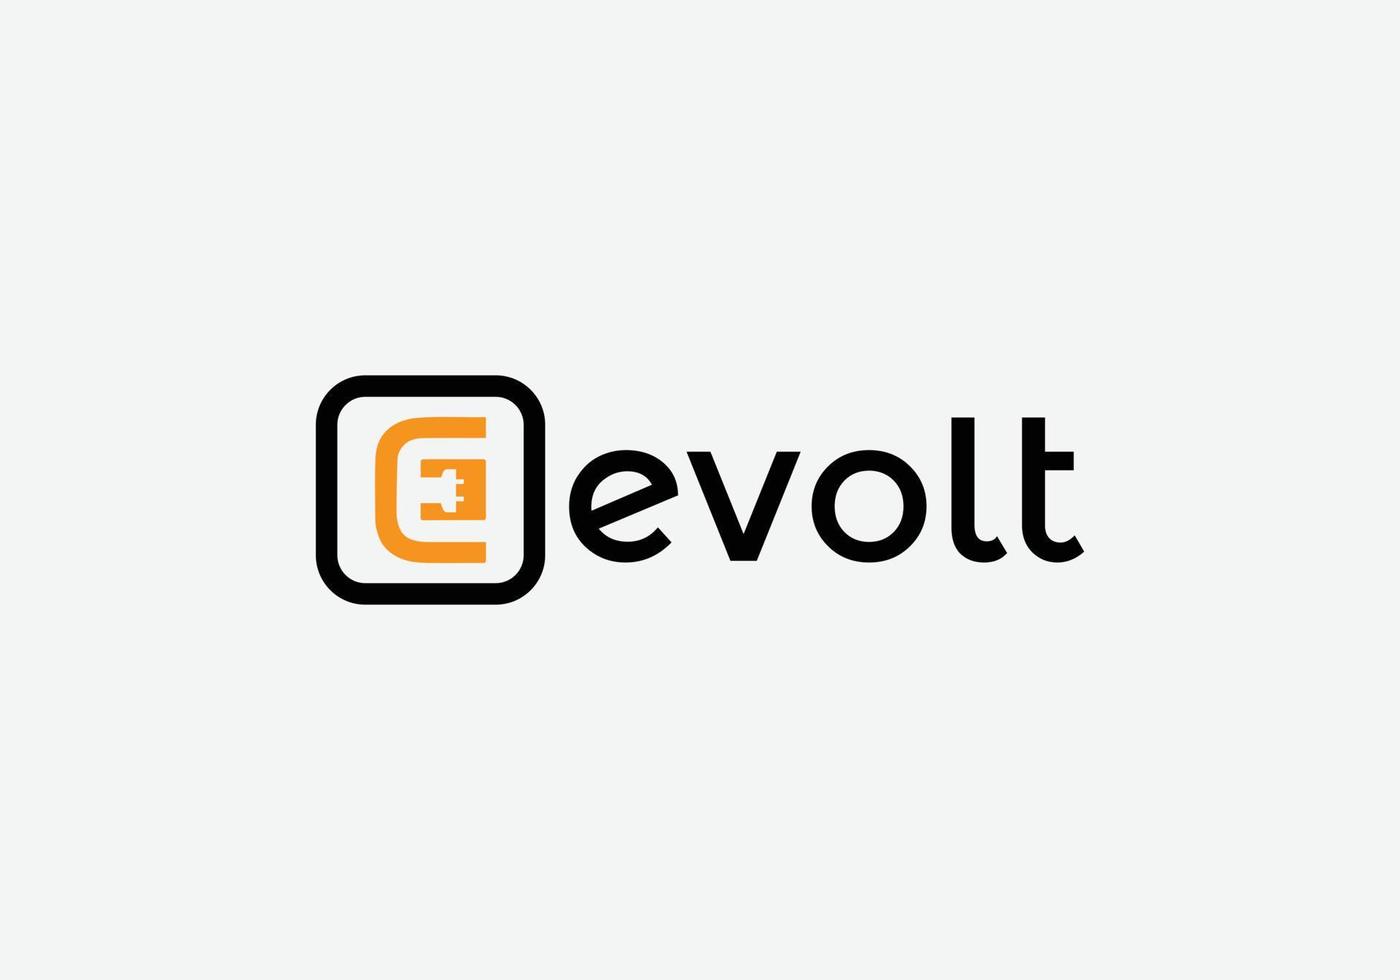 E-volt Abstract e letter modern minimalist tech emblem logo design vector